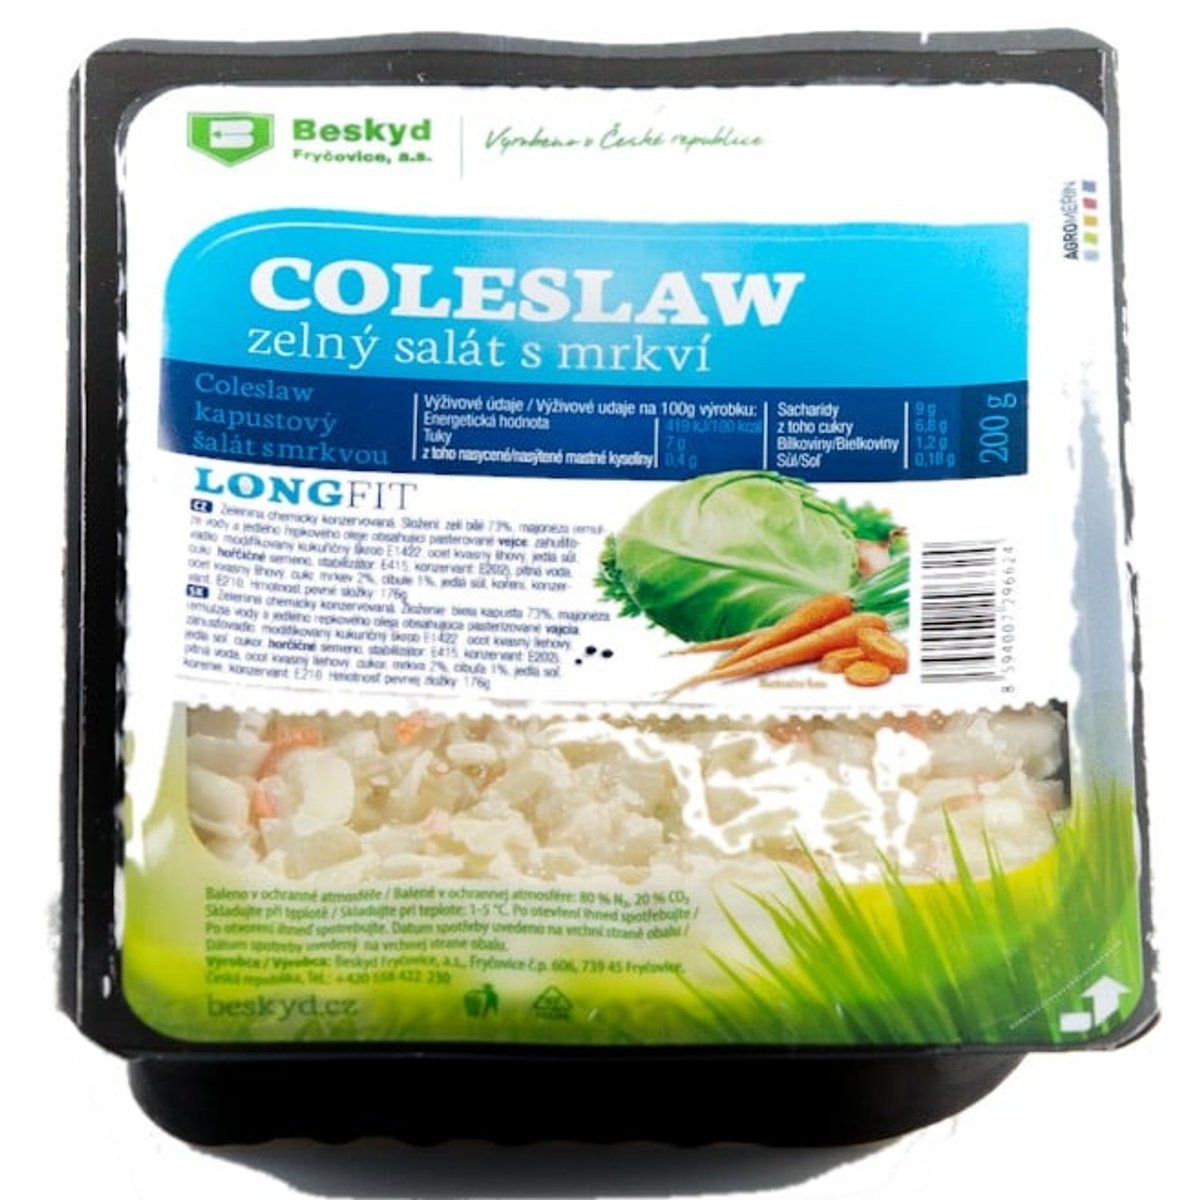 Long fit Coleslaw zelný salát s mrkví